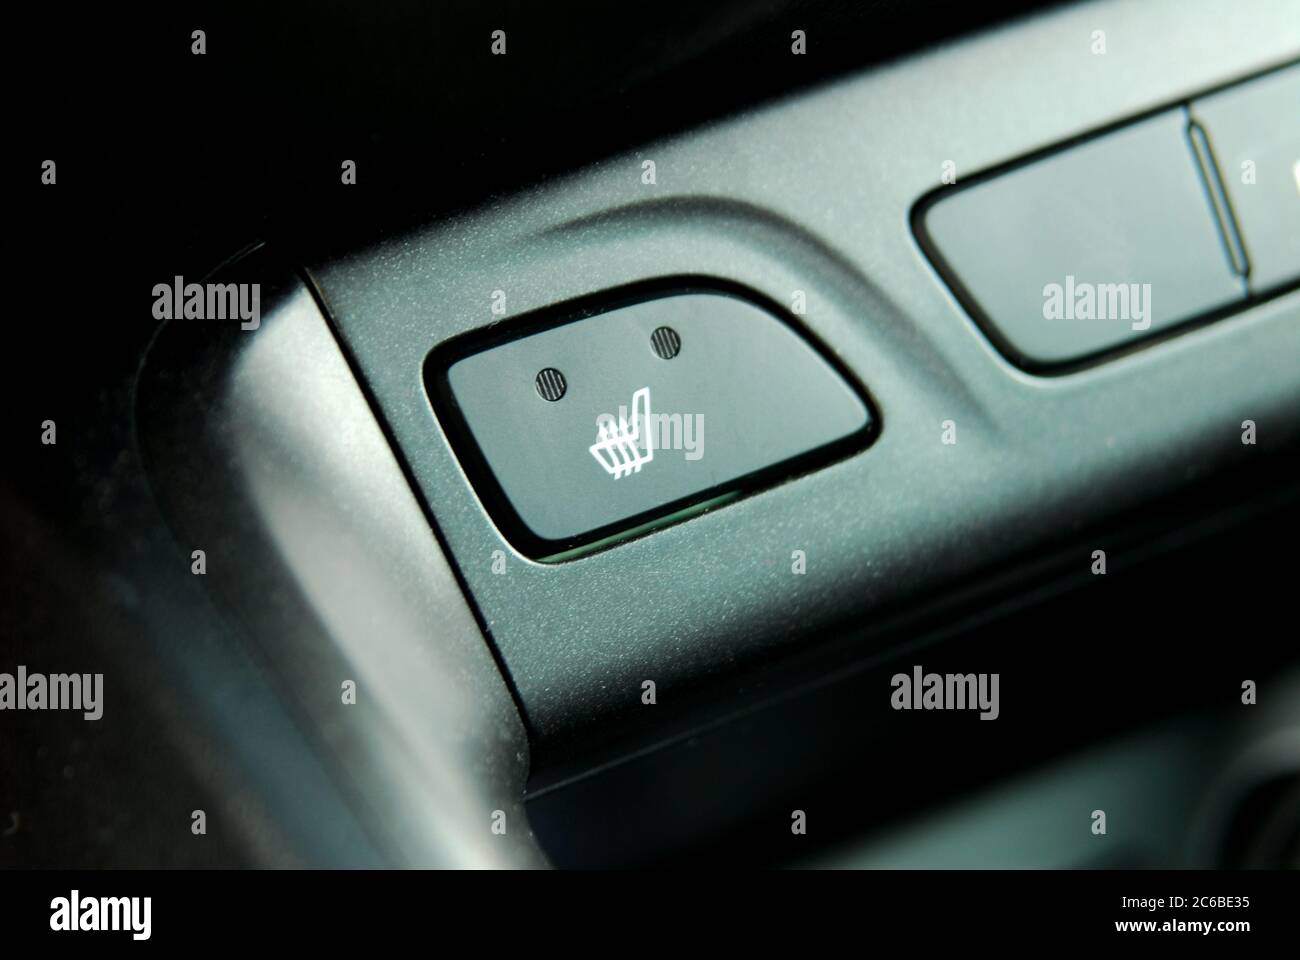 Icon heated seat immagini e fotografie stock ad alta risoluzione - Alamy